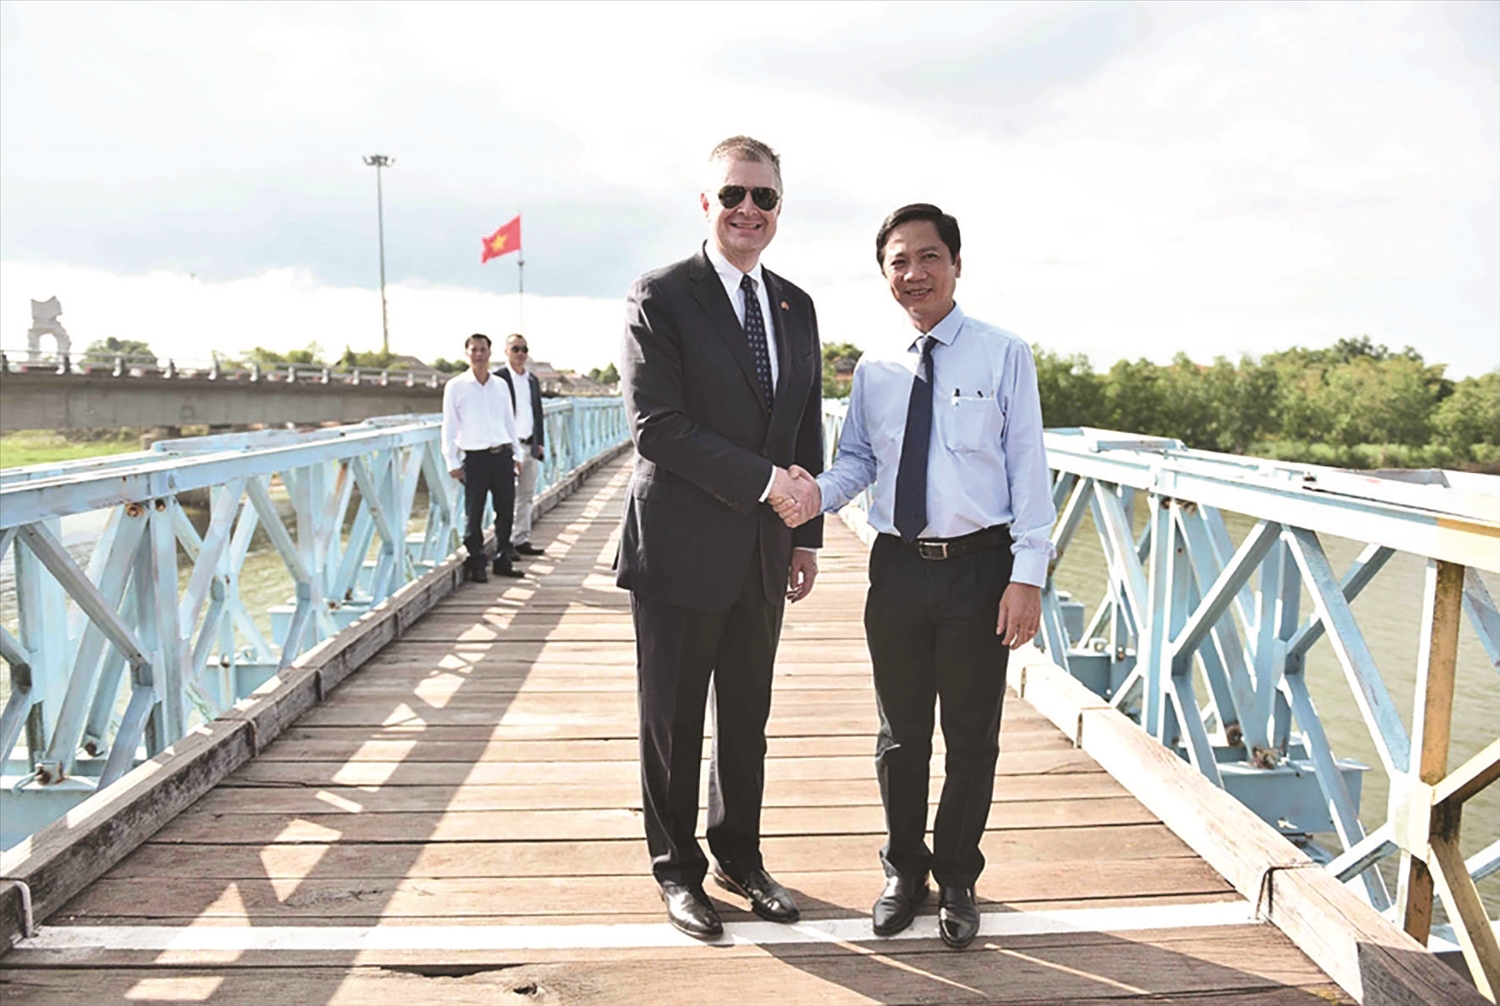 Đại sứ Mỹ tại Việt Nam Daniel J. Kritenbrink bắt tay Phó Chủ tịch UBND tỉnh Quảng Trị Hoàng Nam trên cây cầu lịch sử.